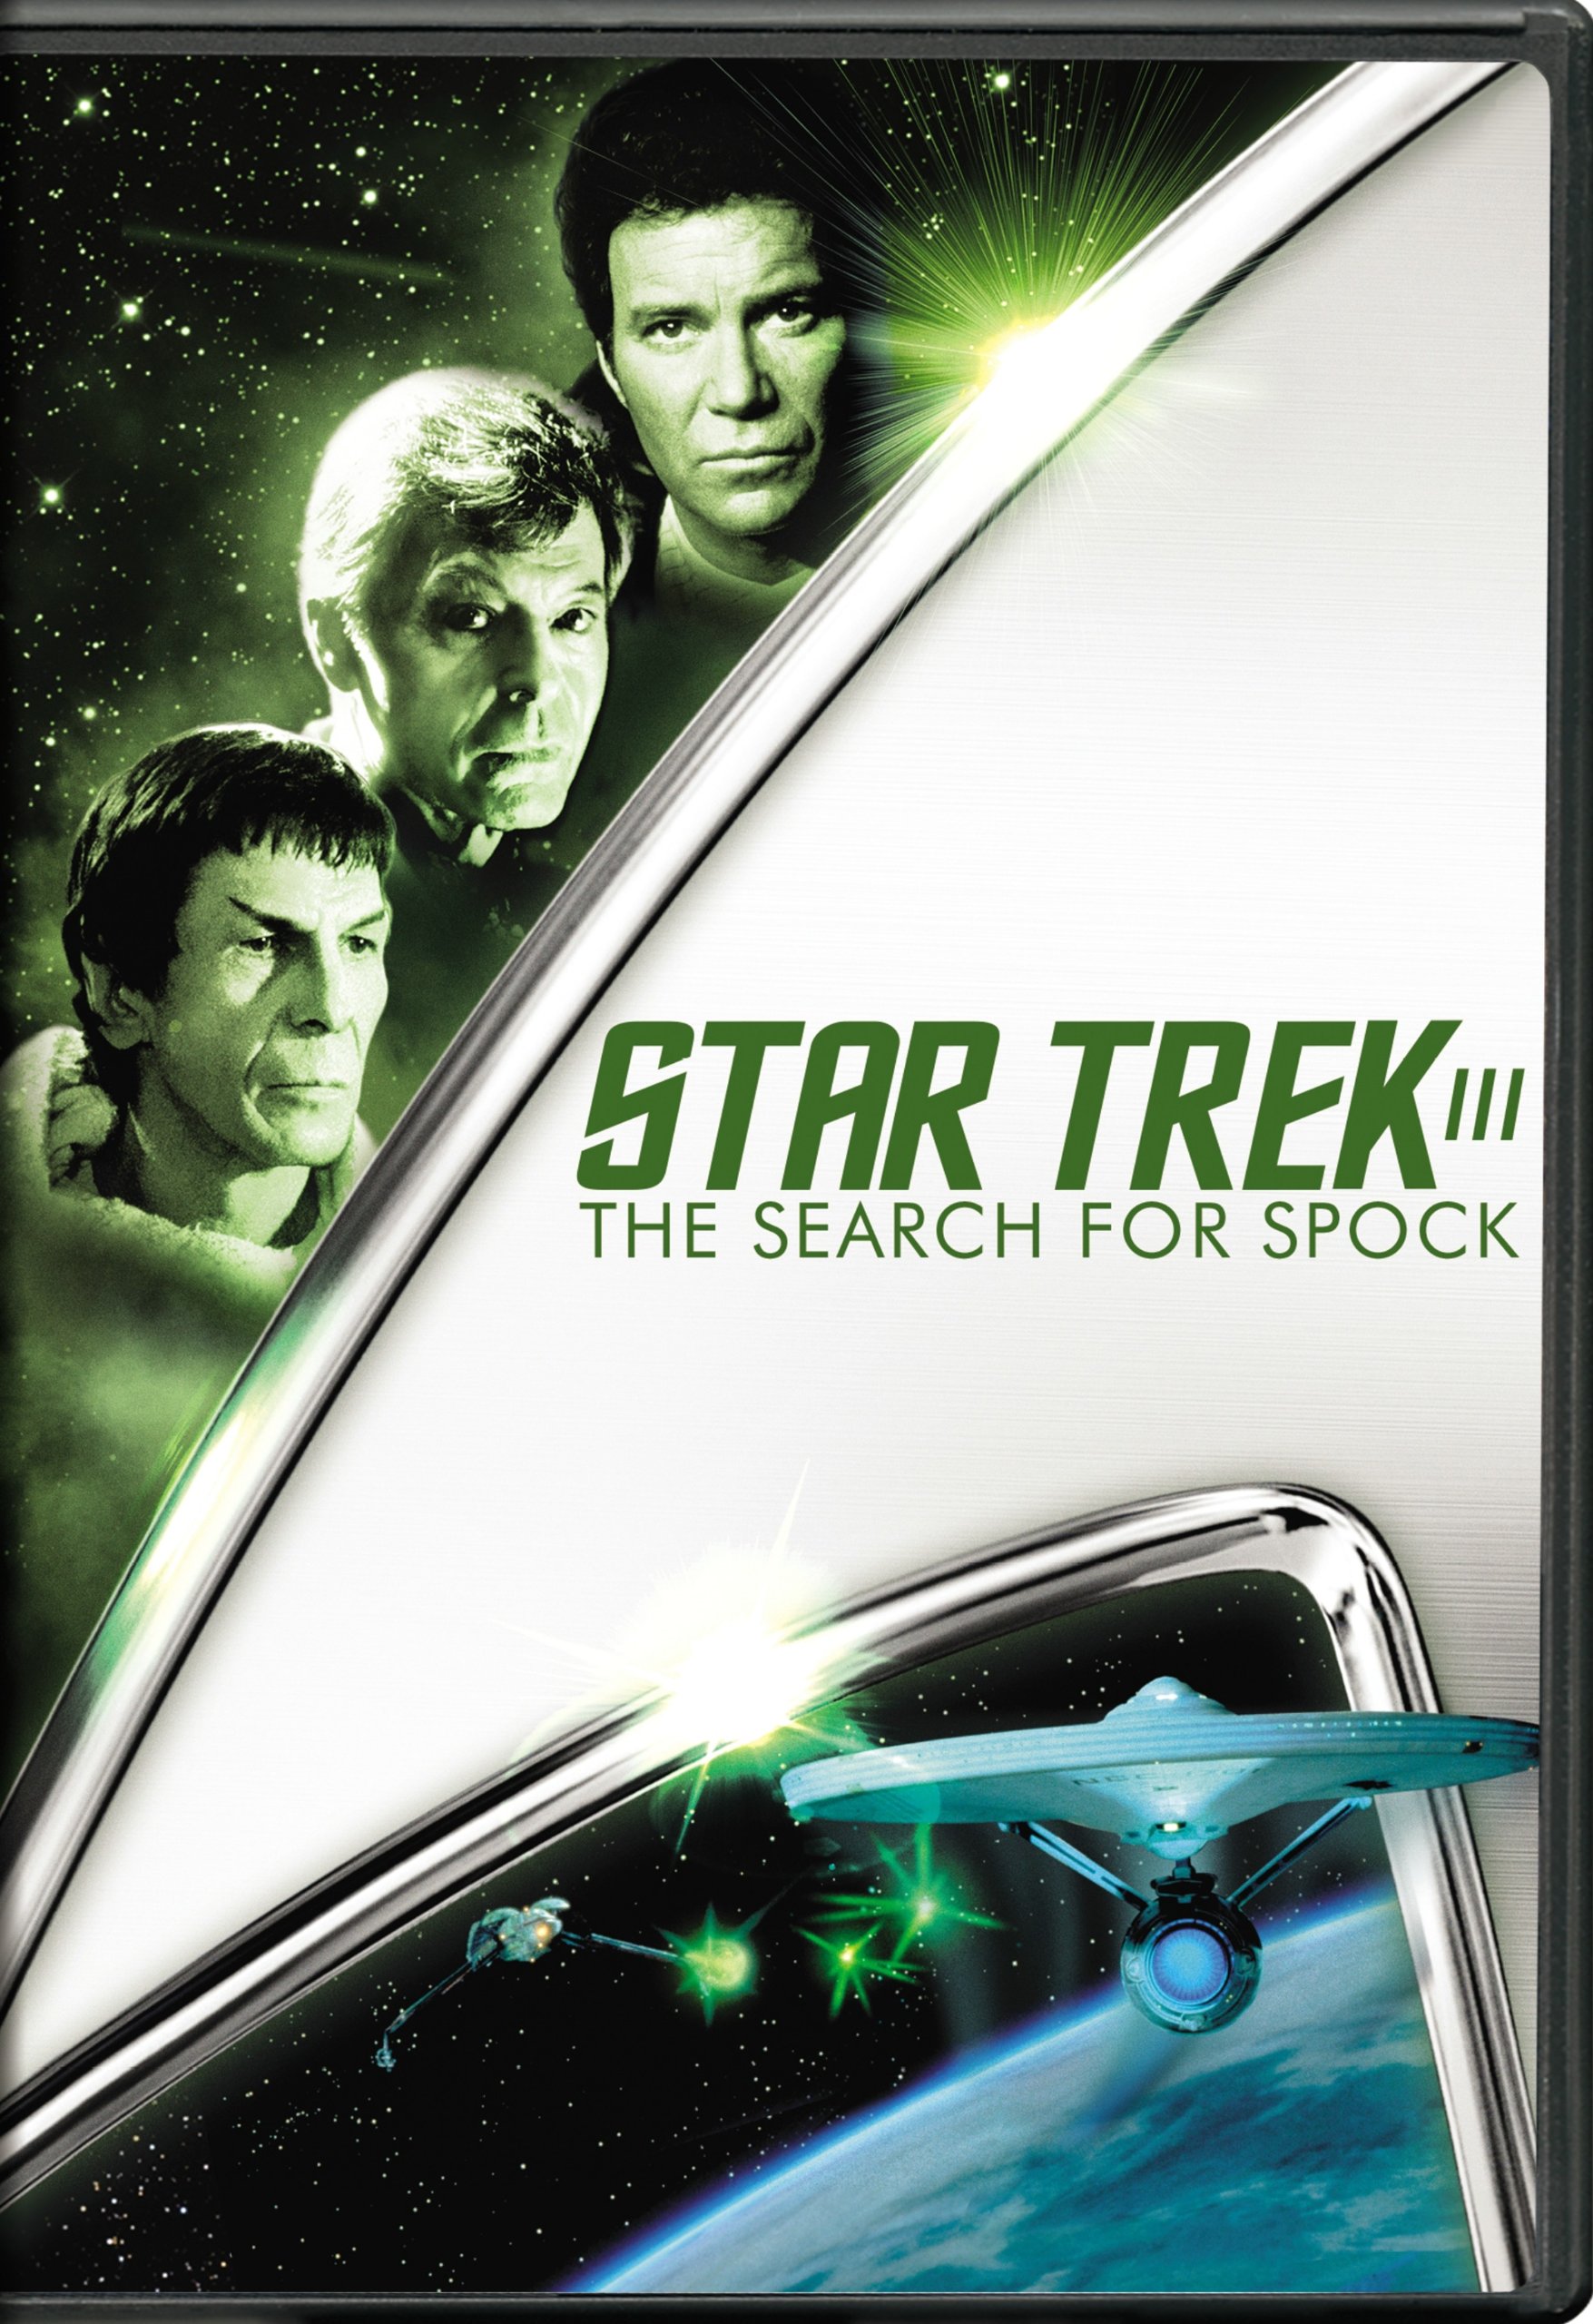 Star Trek 3 Dvd